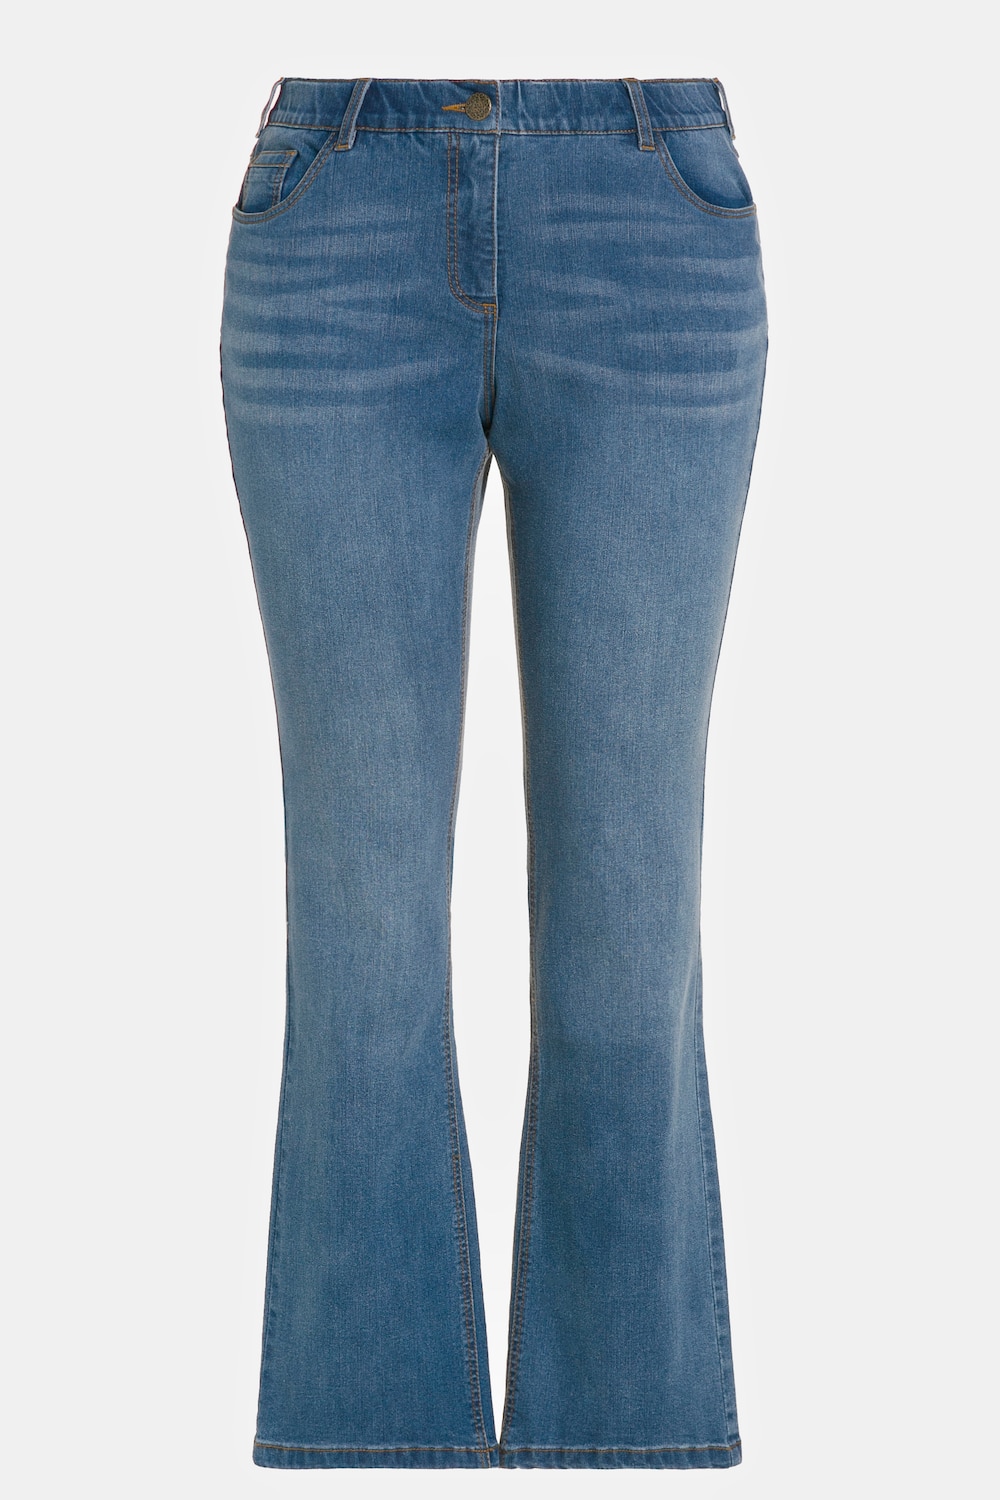 Grote Maten jeans Marie, Dames, blauw, Maat: 52, Katoen/Polyester/Viscose, Ulla Popken